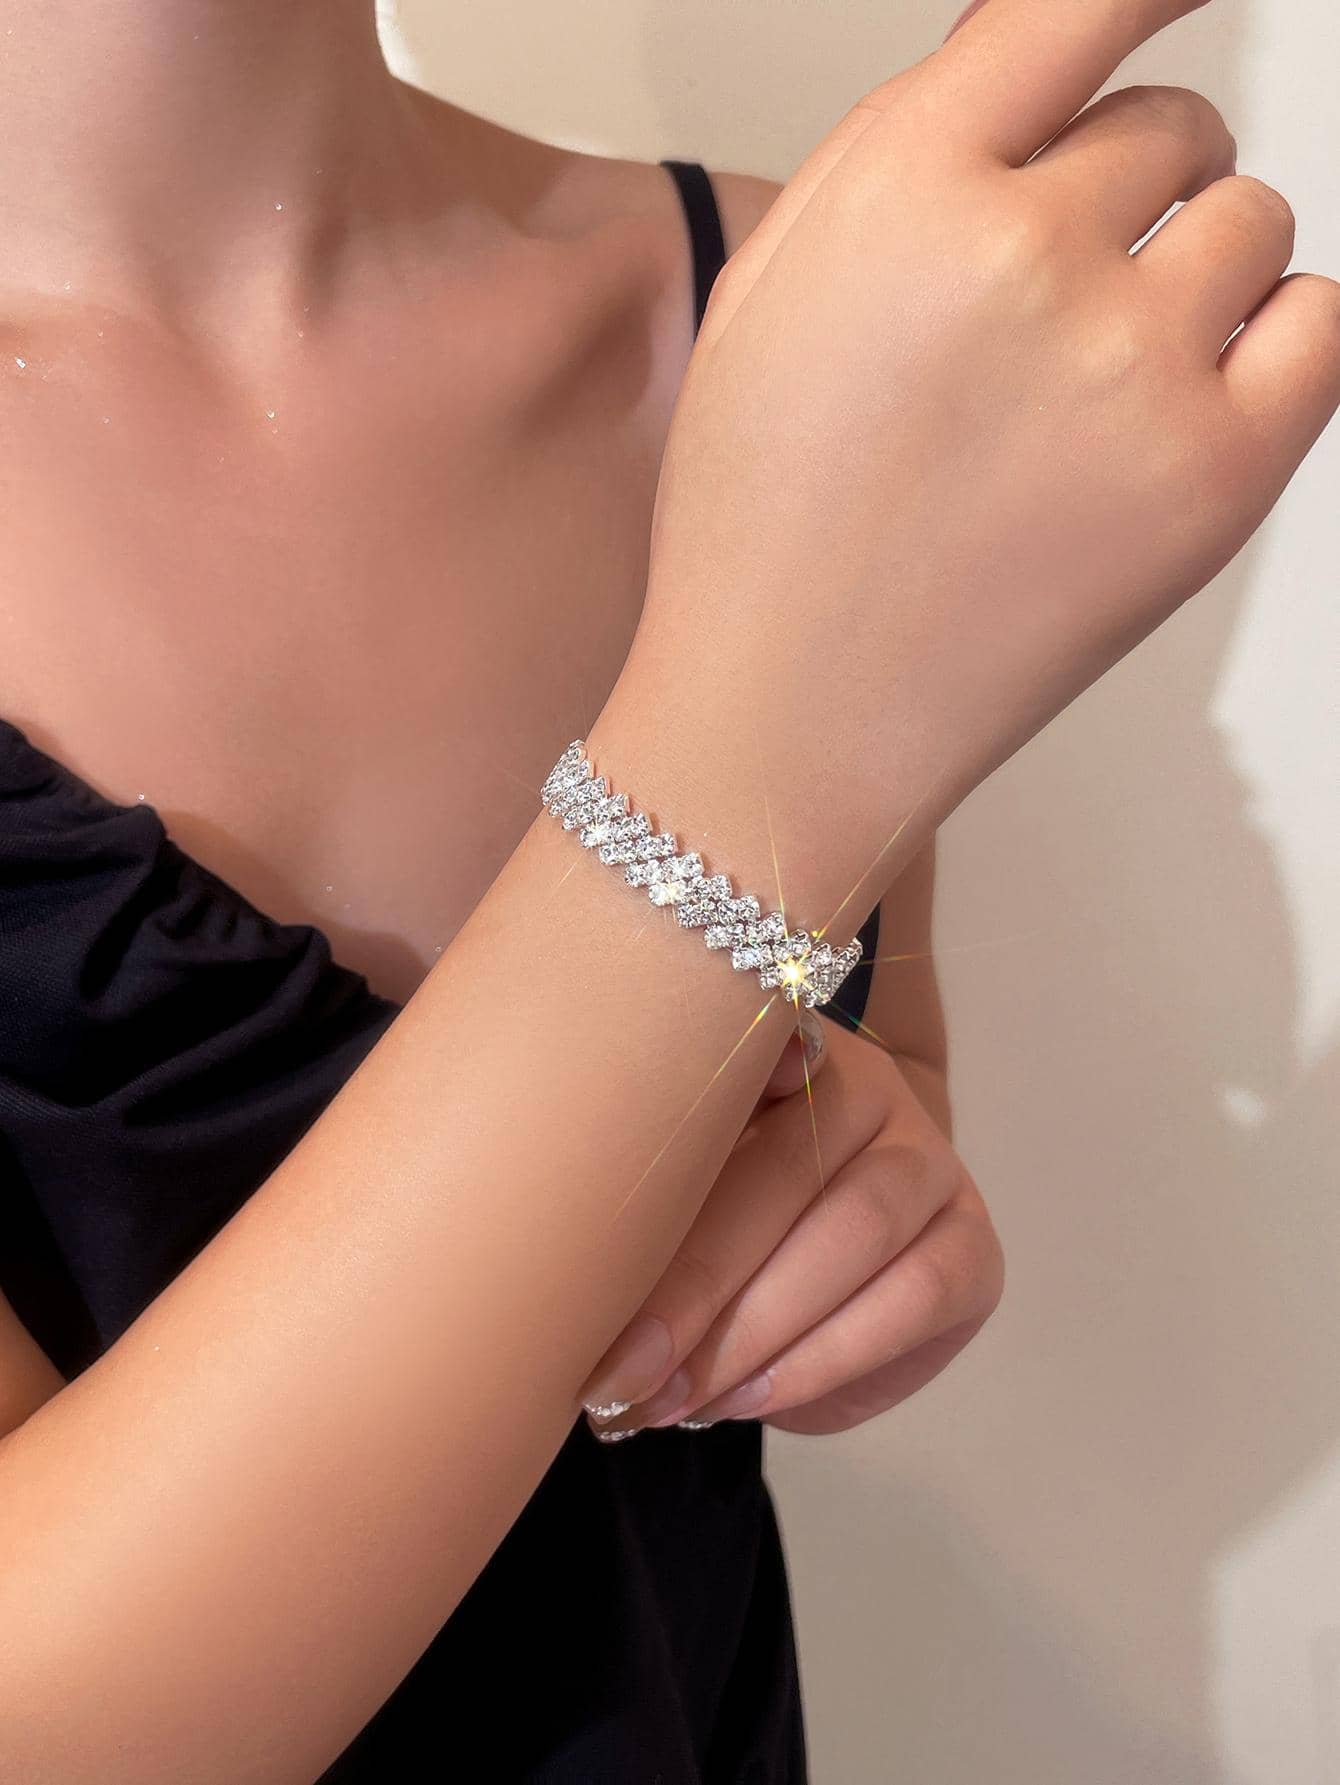 1pc Glamorous Rhinestone Decor Bracelet For Women For Gift - Negative Apparel